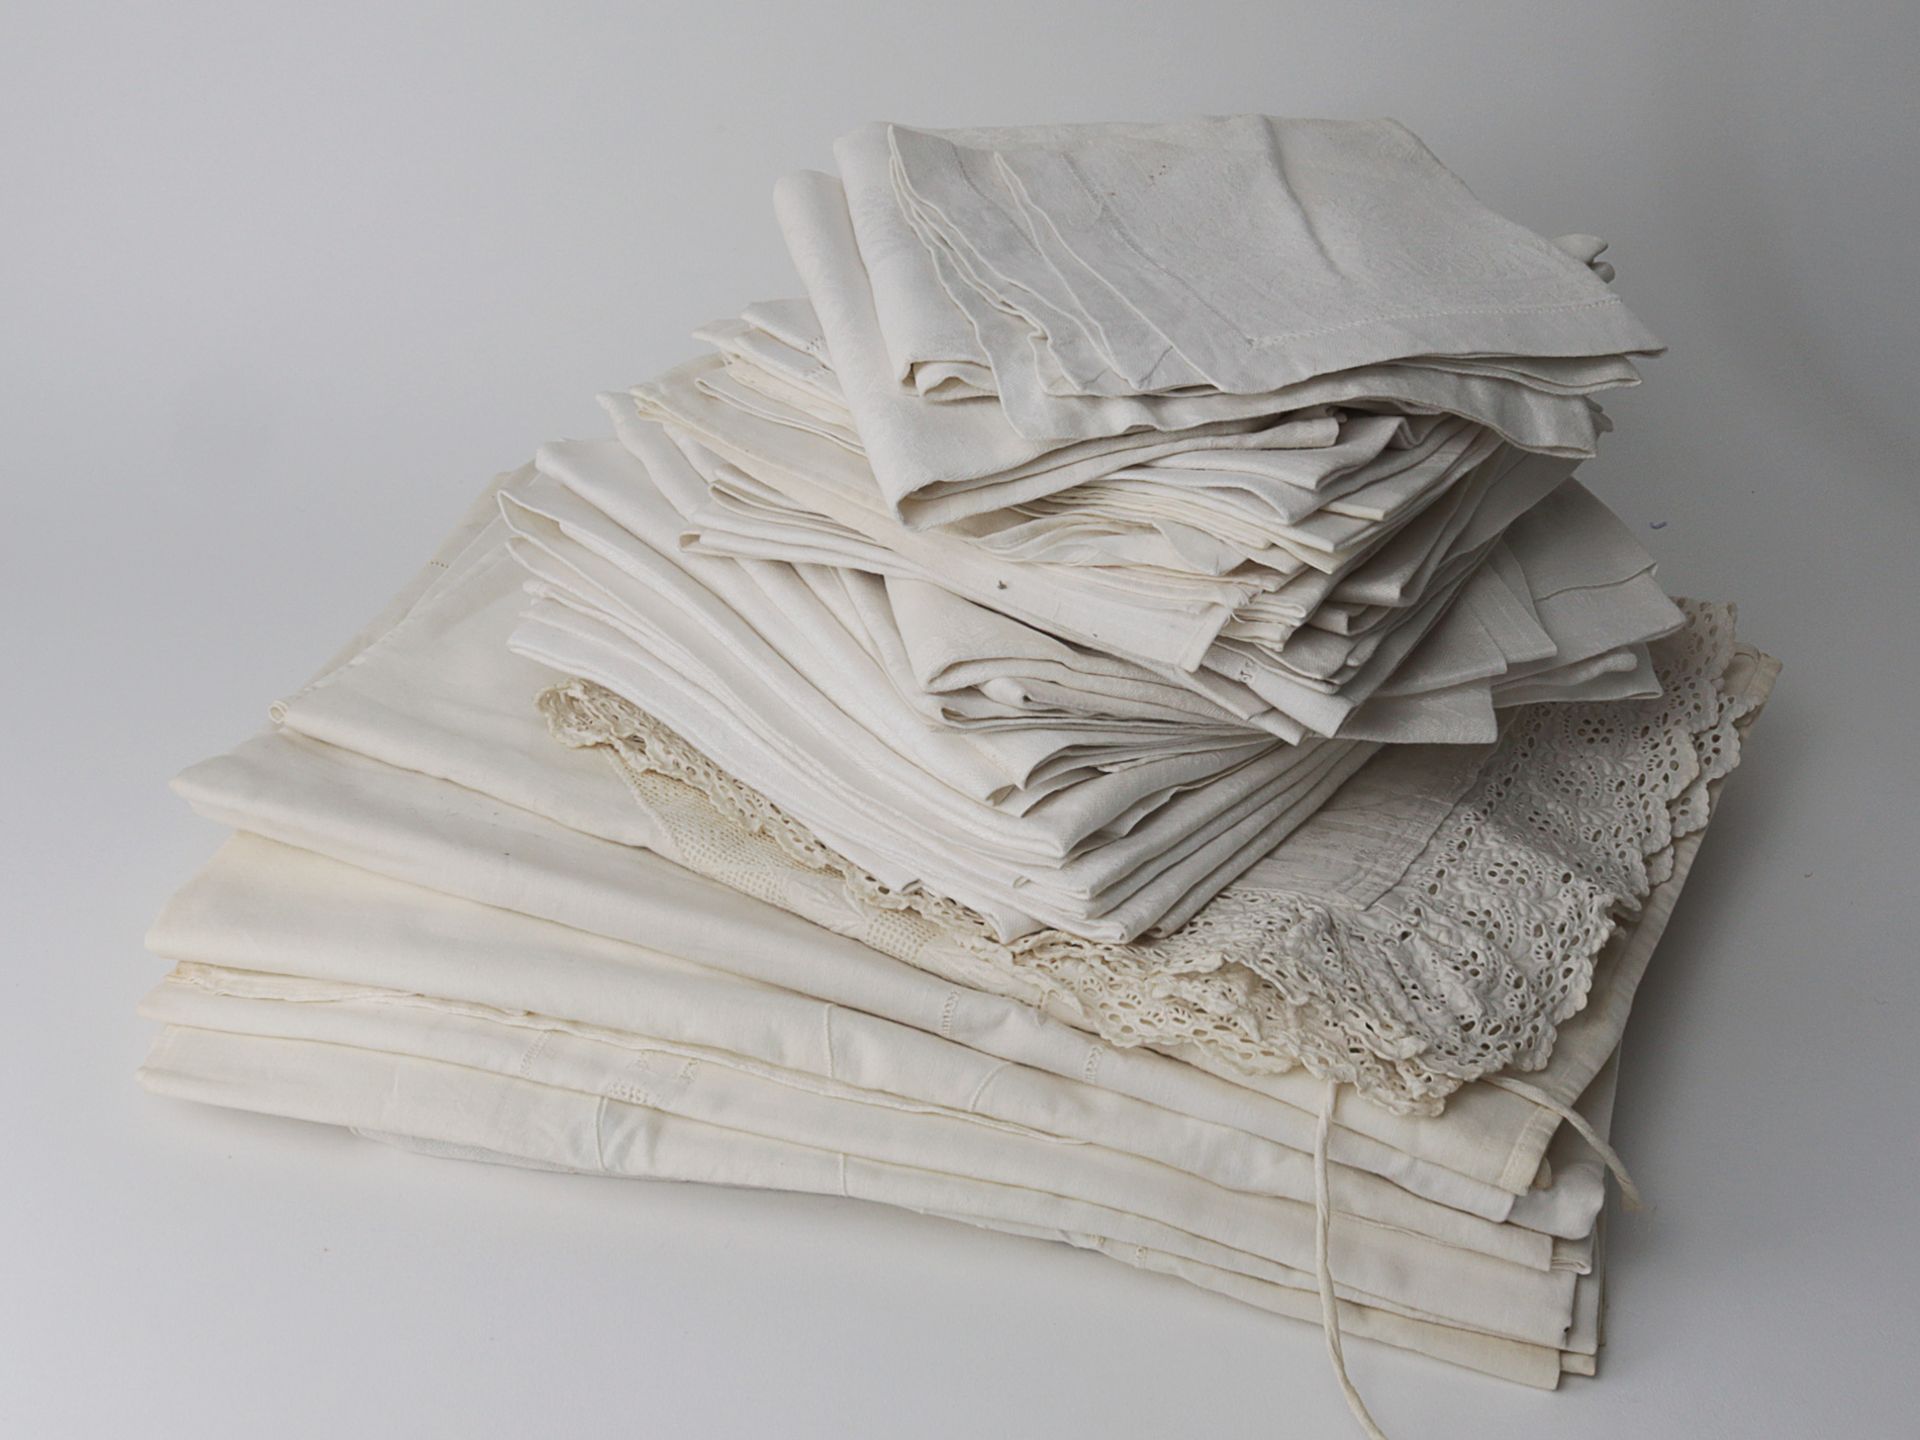 Wäschekonvolut um 1910/20, über 40 Teile, weißer Leinendamast, 12 große Tafelservi